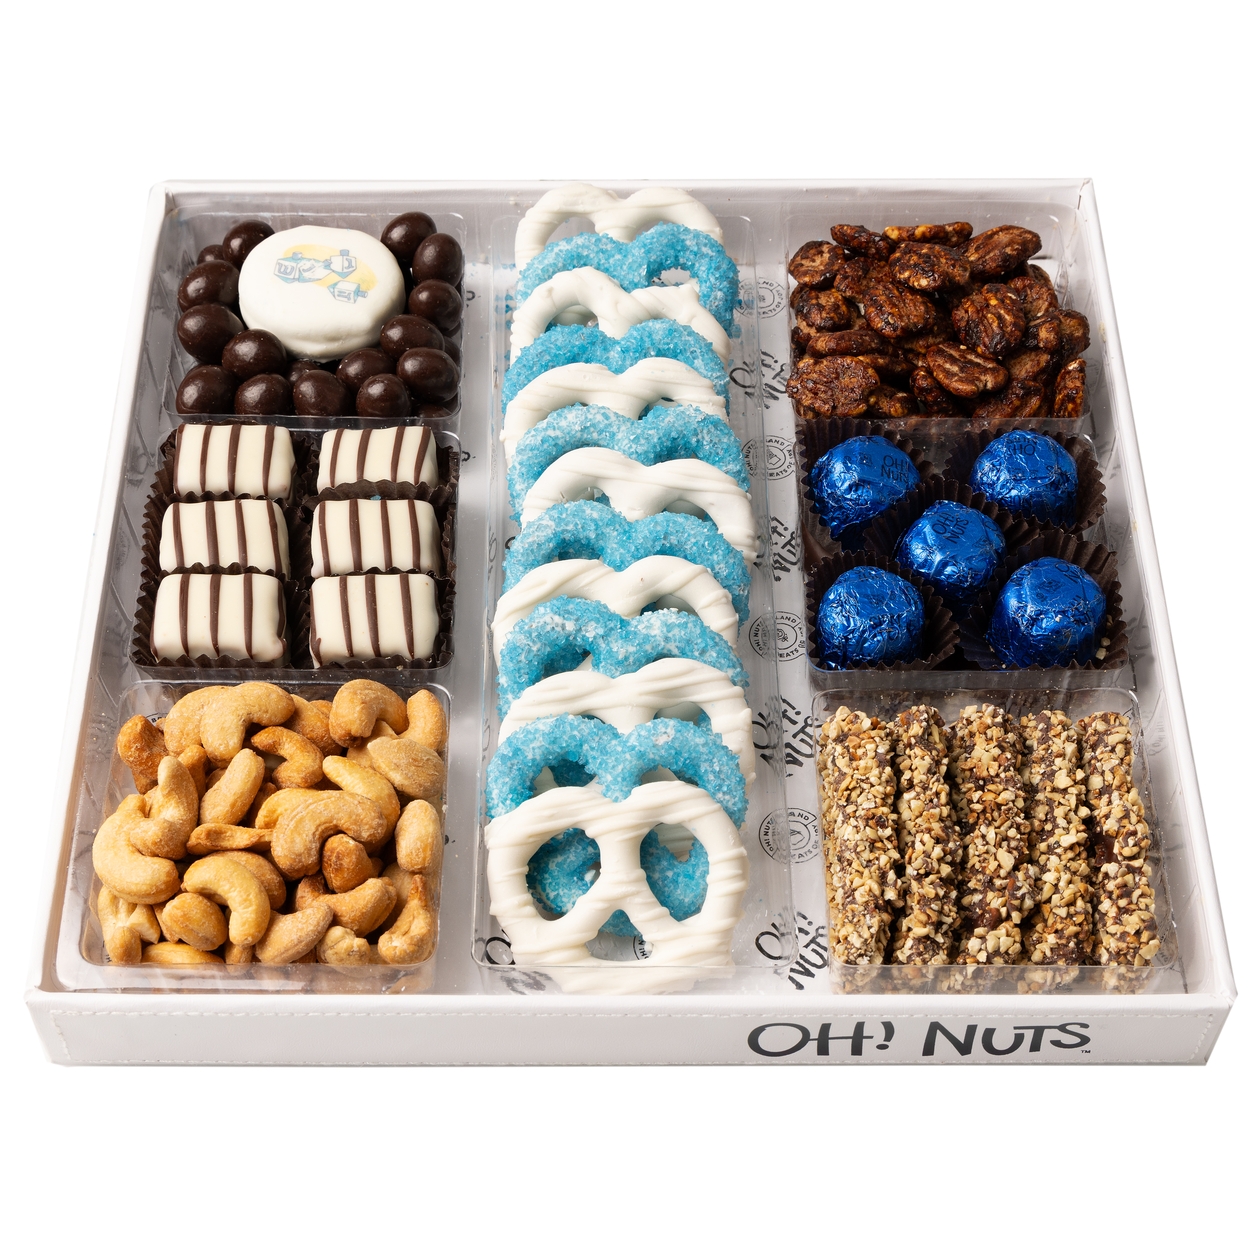 Mixed Nut Gift Box | The Fruit Company®